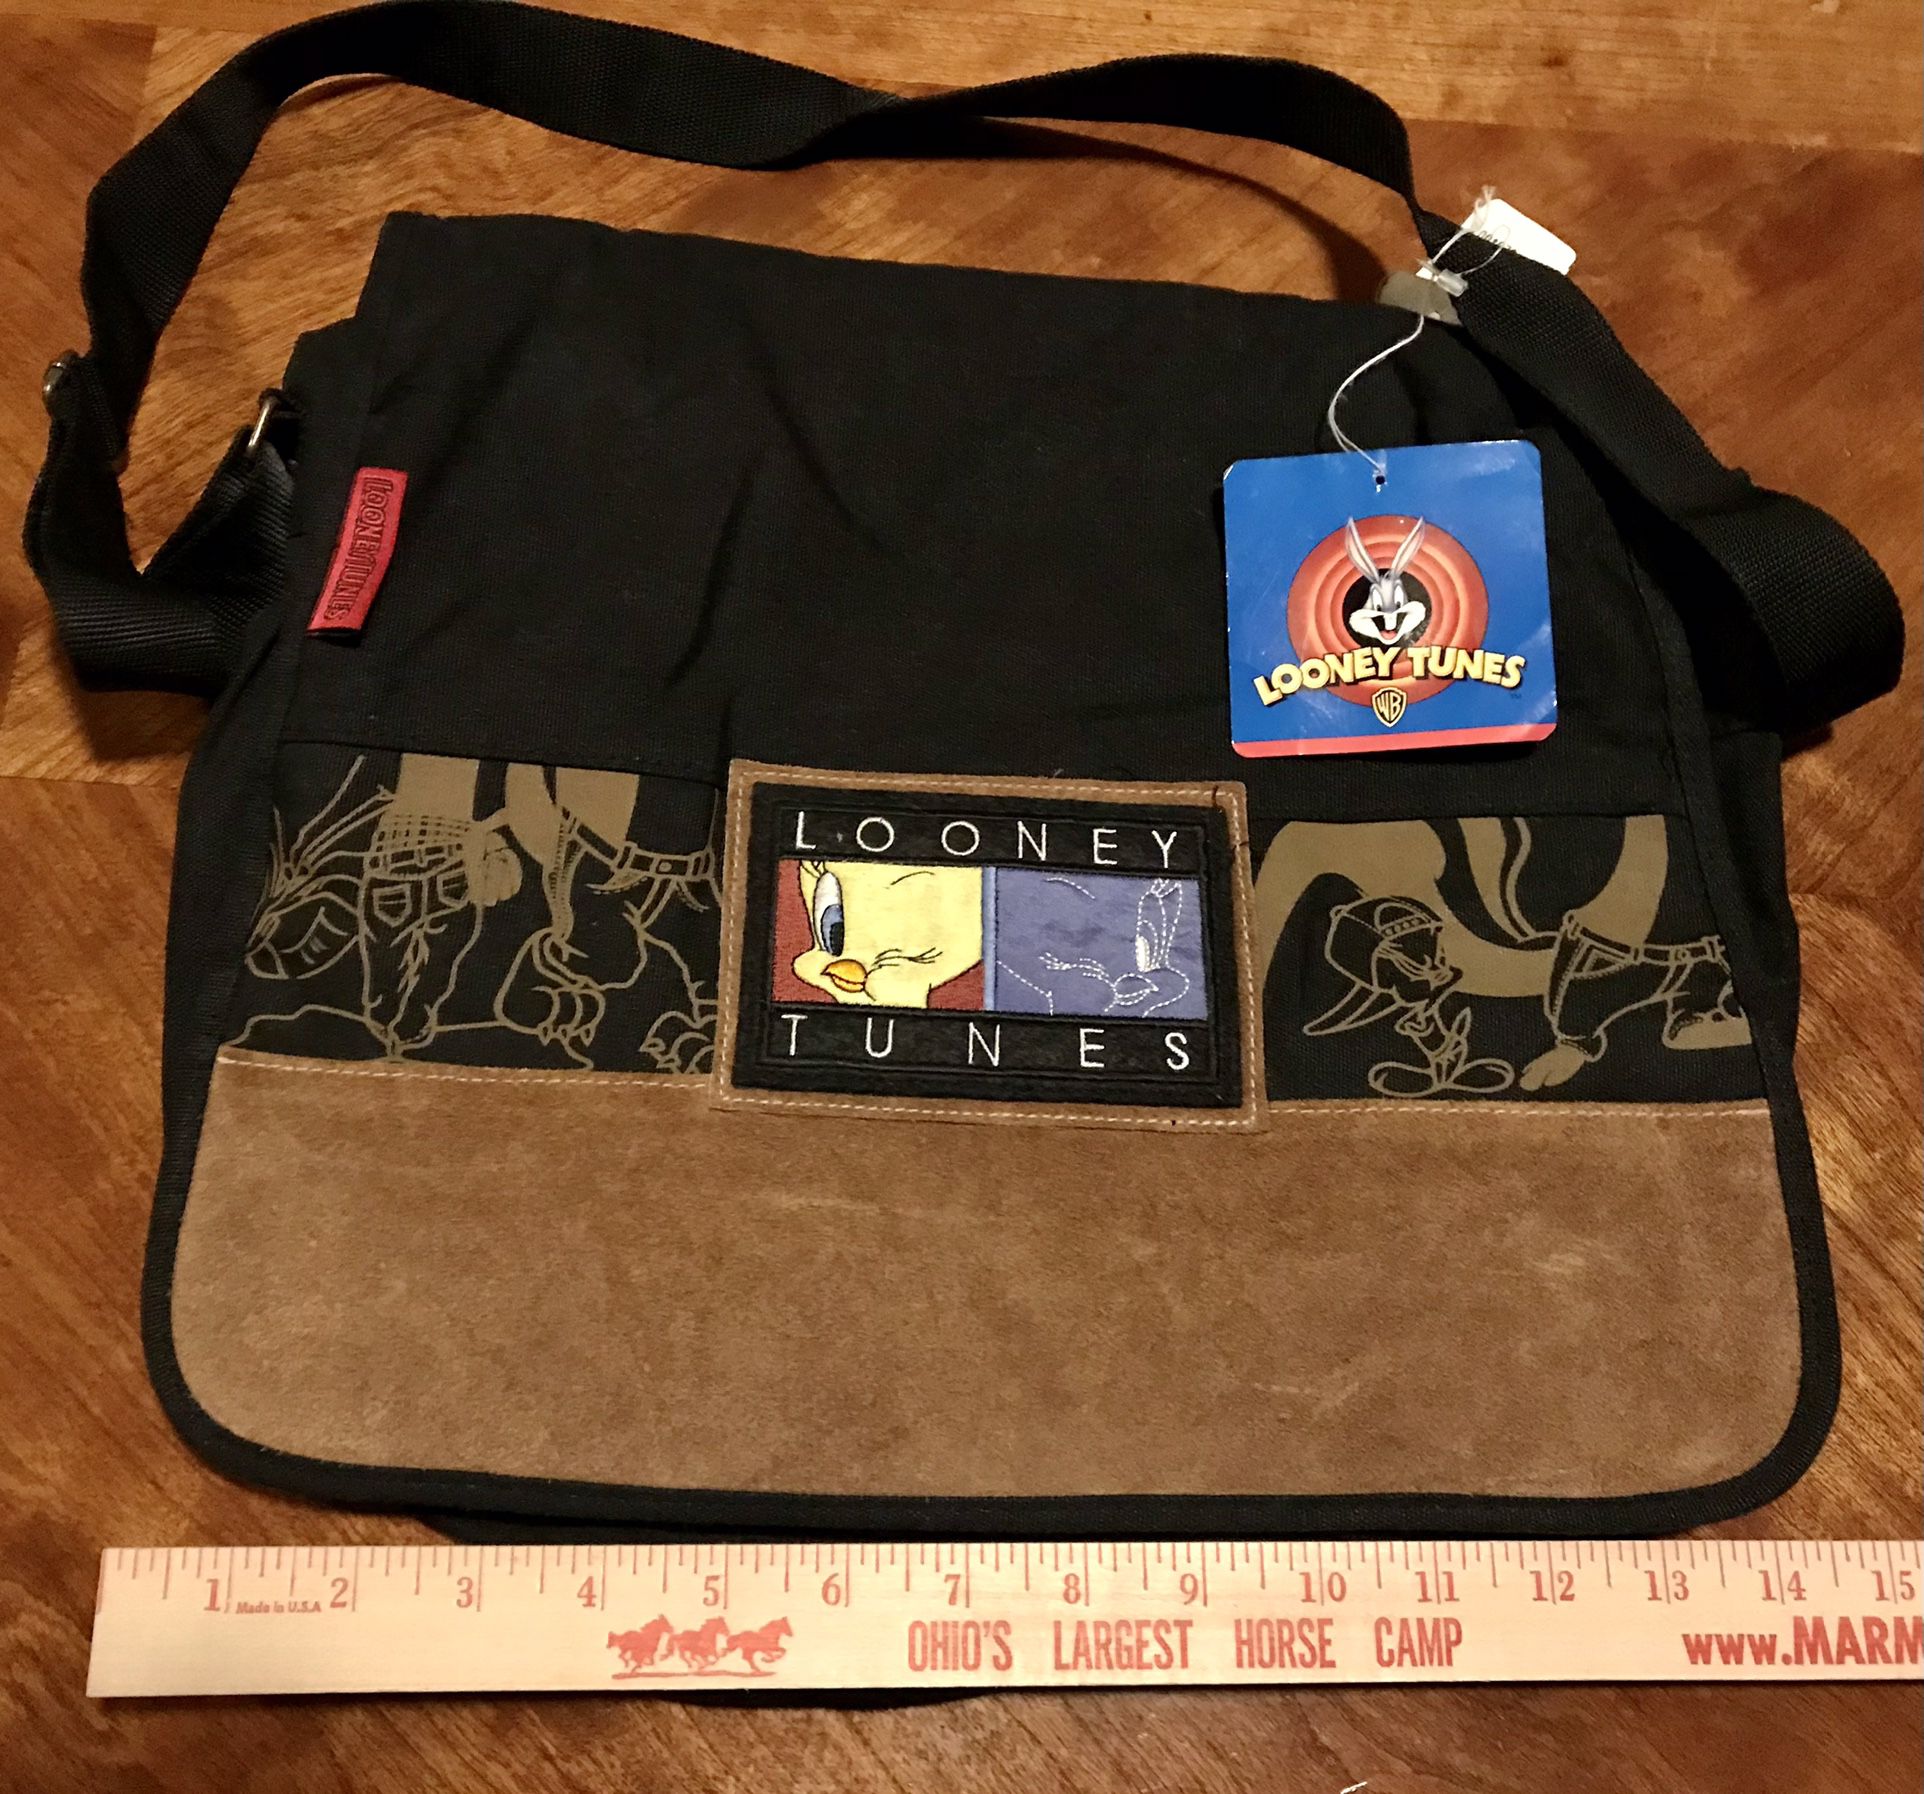 New Vintage 1997 Warner Brothers Looney Tunes Tweety Bird Black Book/Laptop Bag